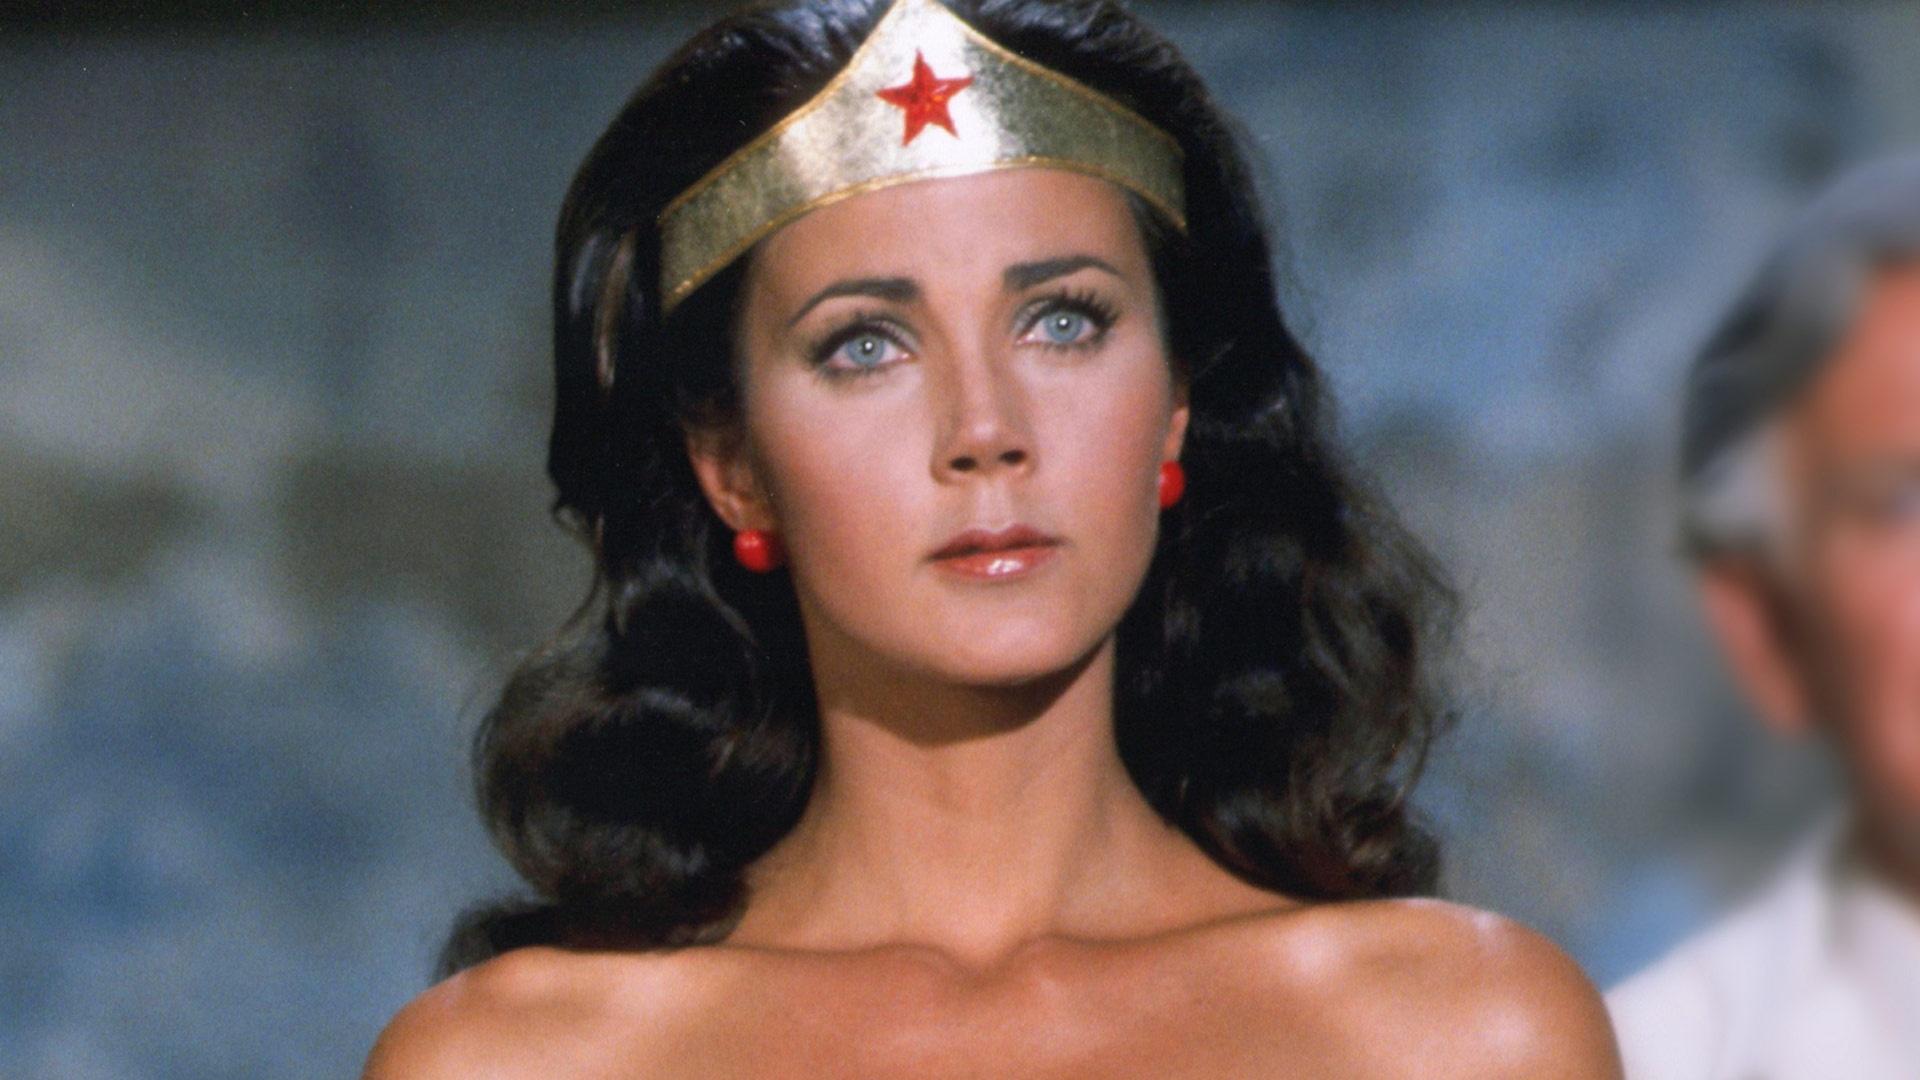 Pioneers of Television - Wonder Woman as Everyone's Superhero - Twin